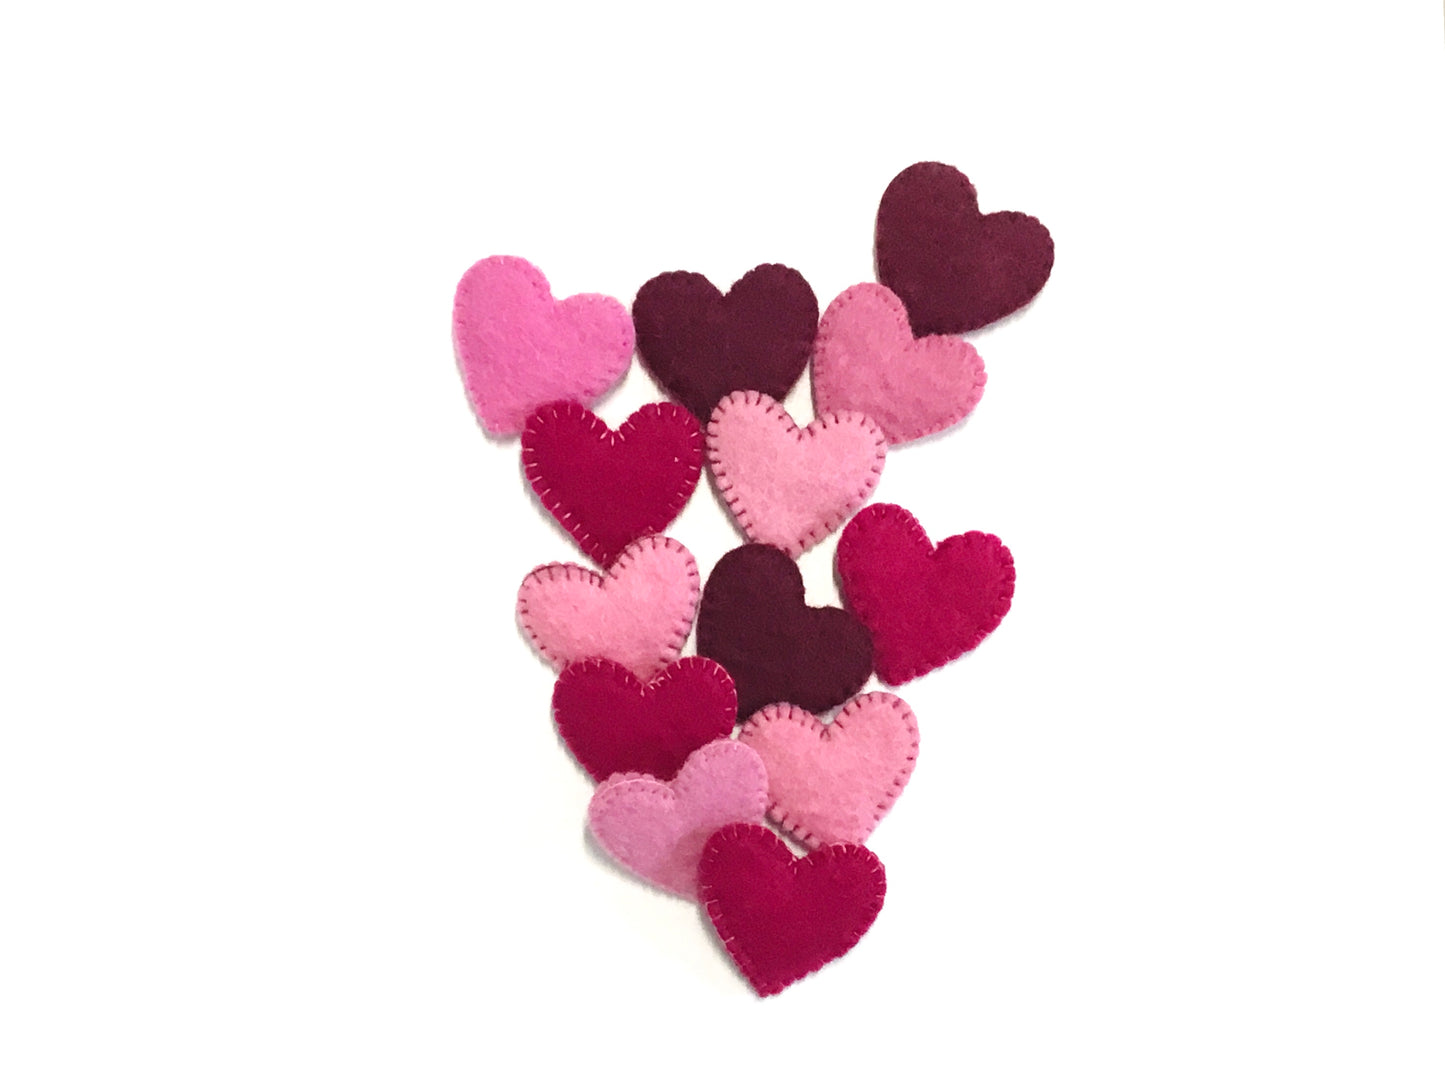 Decorative Wool Heart Pins - Fibres of Life